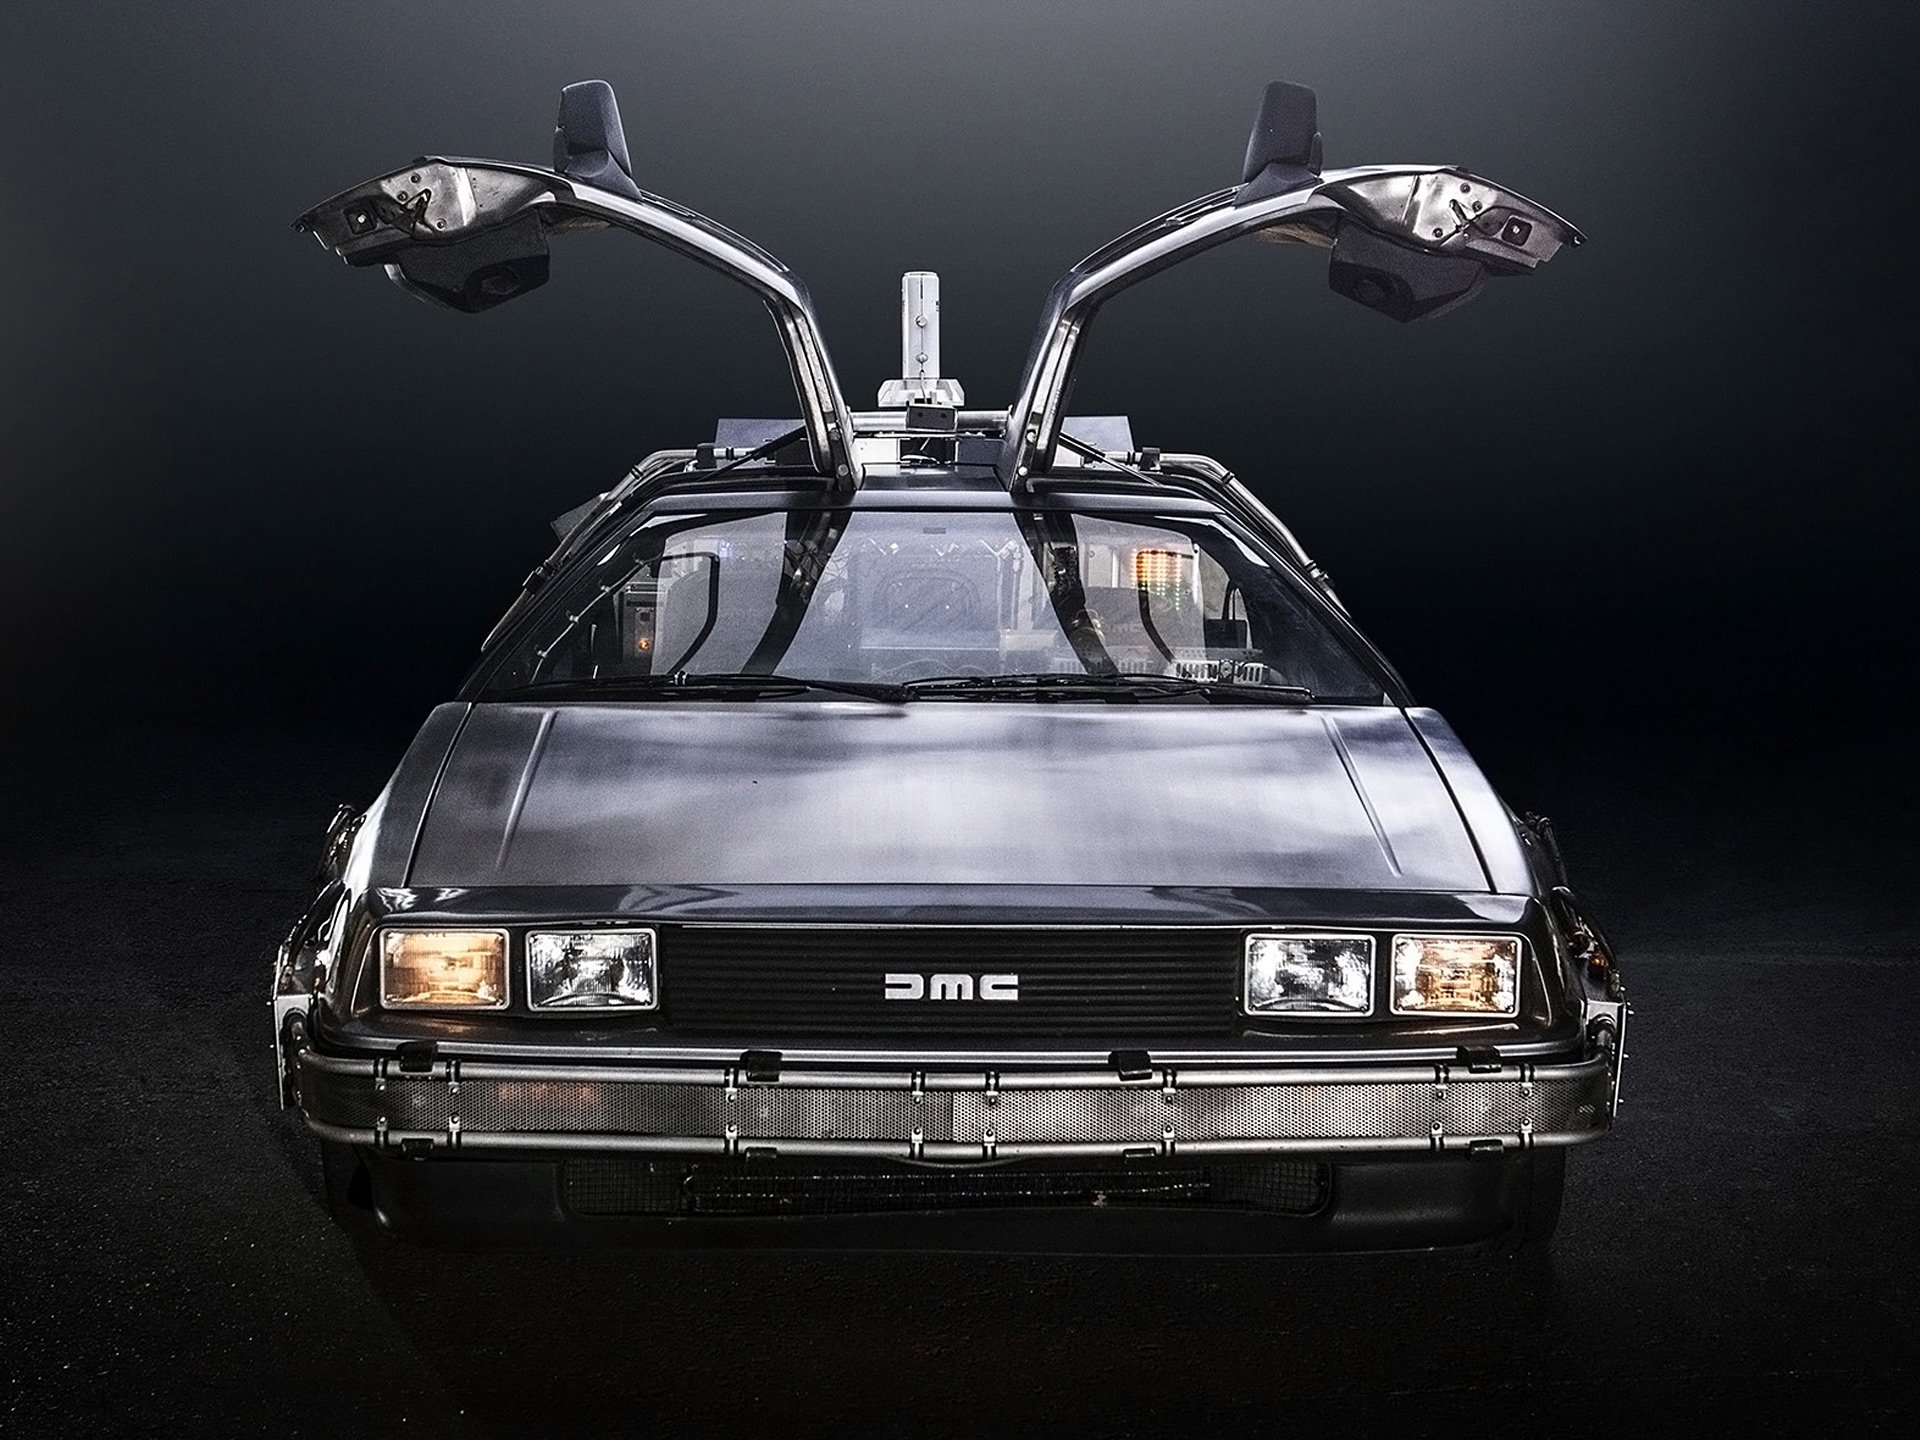 1985, Delorean, Dmc 12, Back to the future, Sci fi, Futuristic, Custom, Concept, Supercar Wallpaper